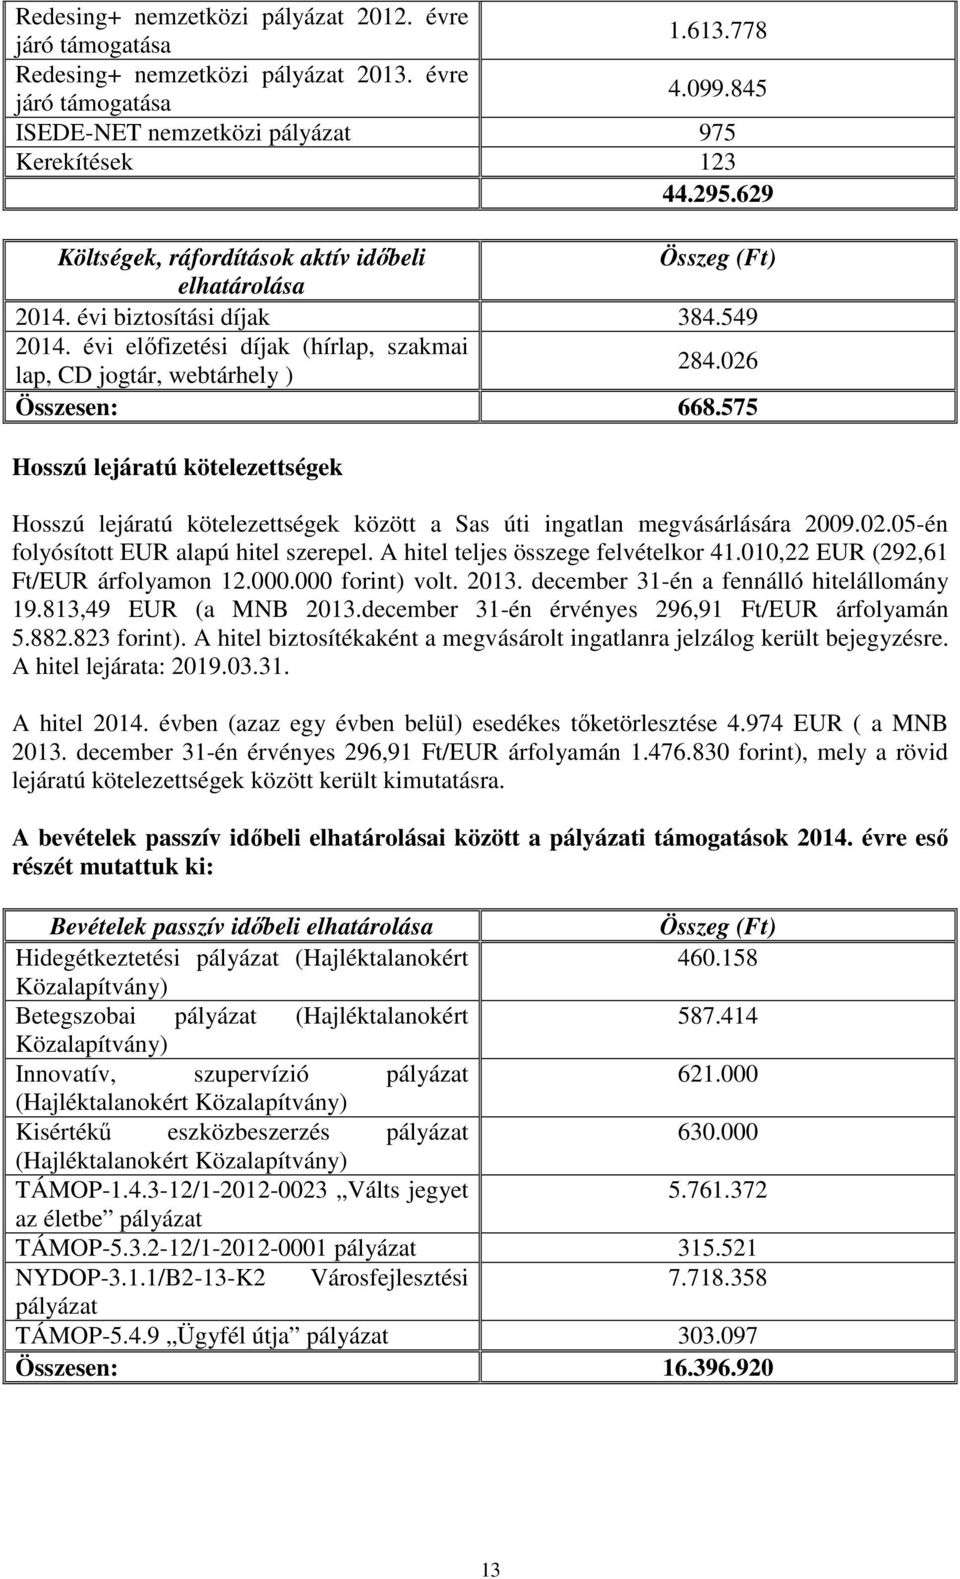 575 Hosszú lejáratú kötelezettségek Hosszú lejáratú kötelezettségek között a Sas úti ingatlan megvásárlására 2009.02.05-én folyósított EUR alapú hitel szerepel. A hitel teljes összege felvételkor 41.